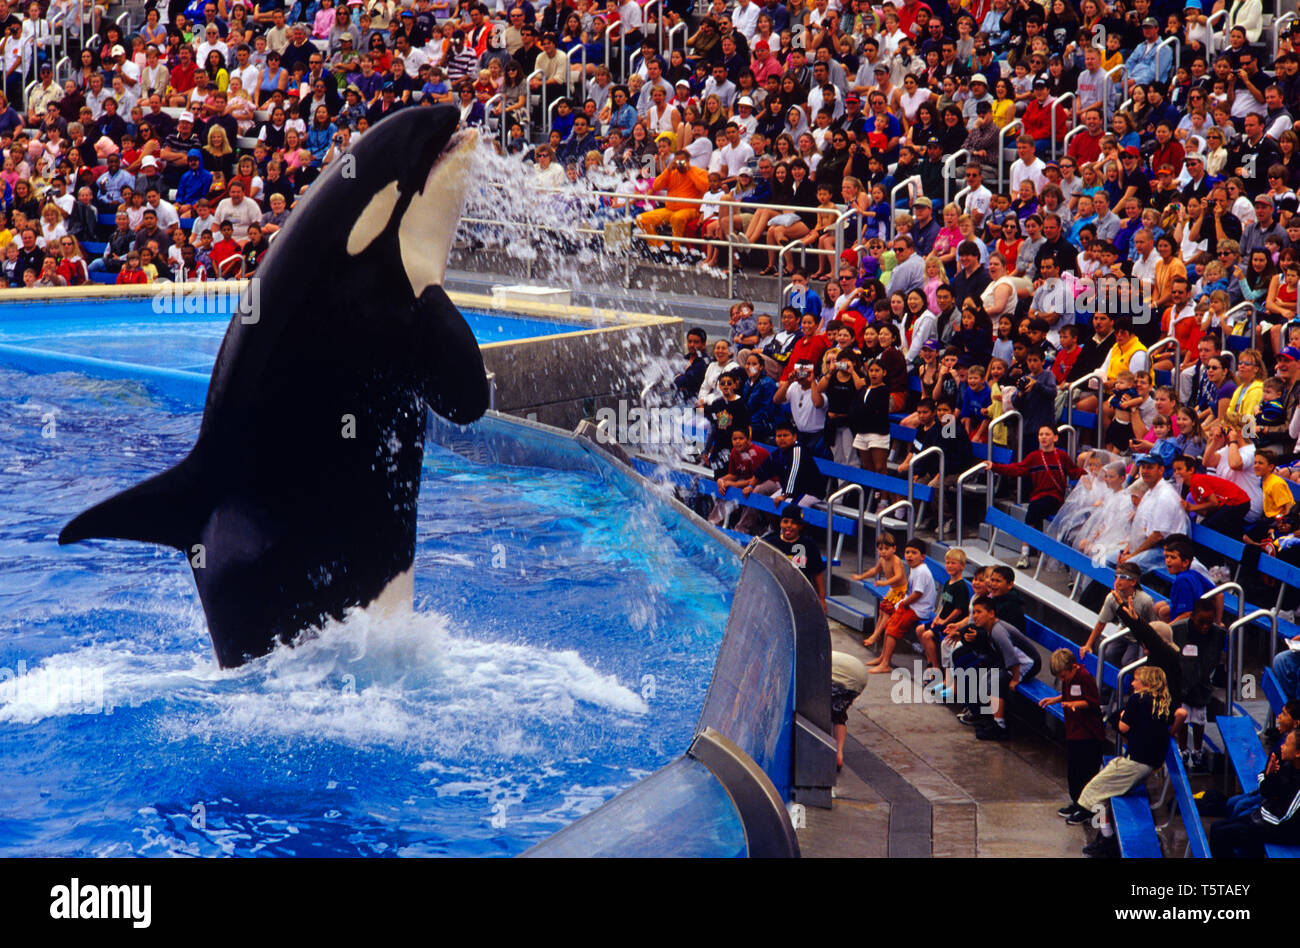 Immagine retrò del Sea World Aquatic Park con l'orrida di balene prima di stordimento pubblico San Diego California USA, immagine retrò dagli anni '90 Foto Stock